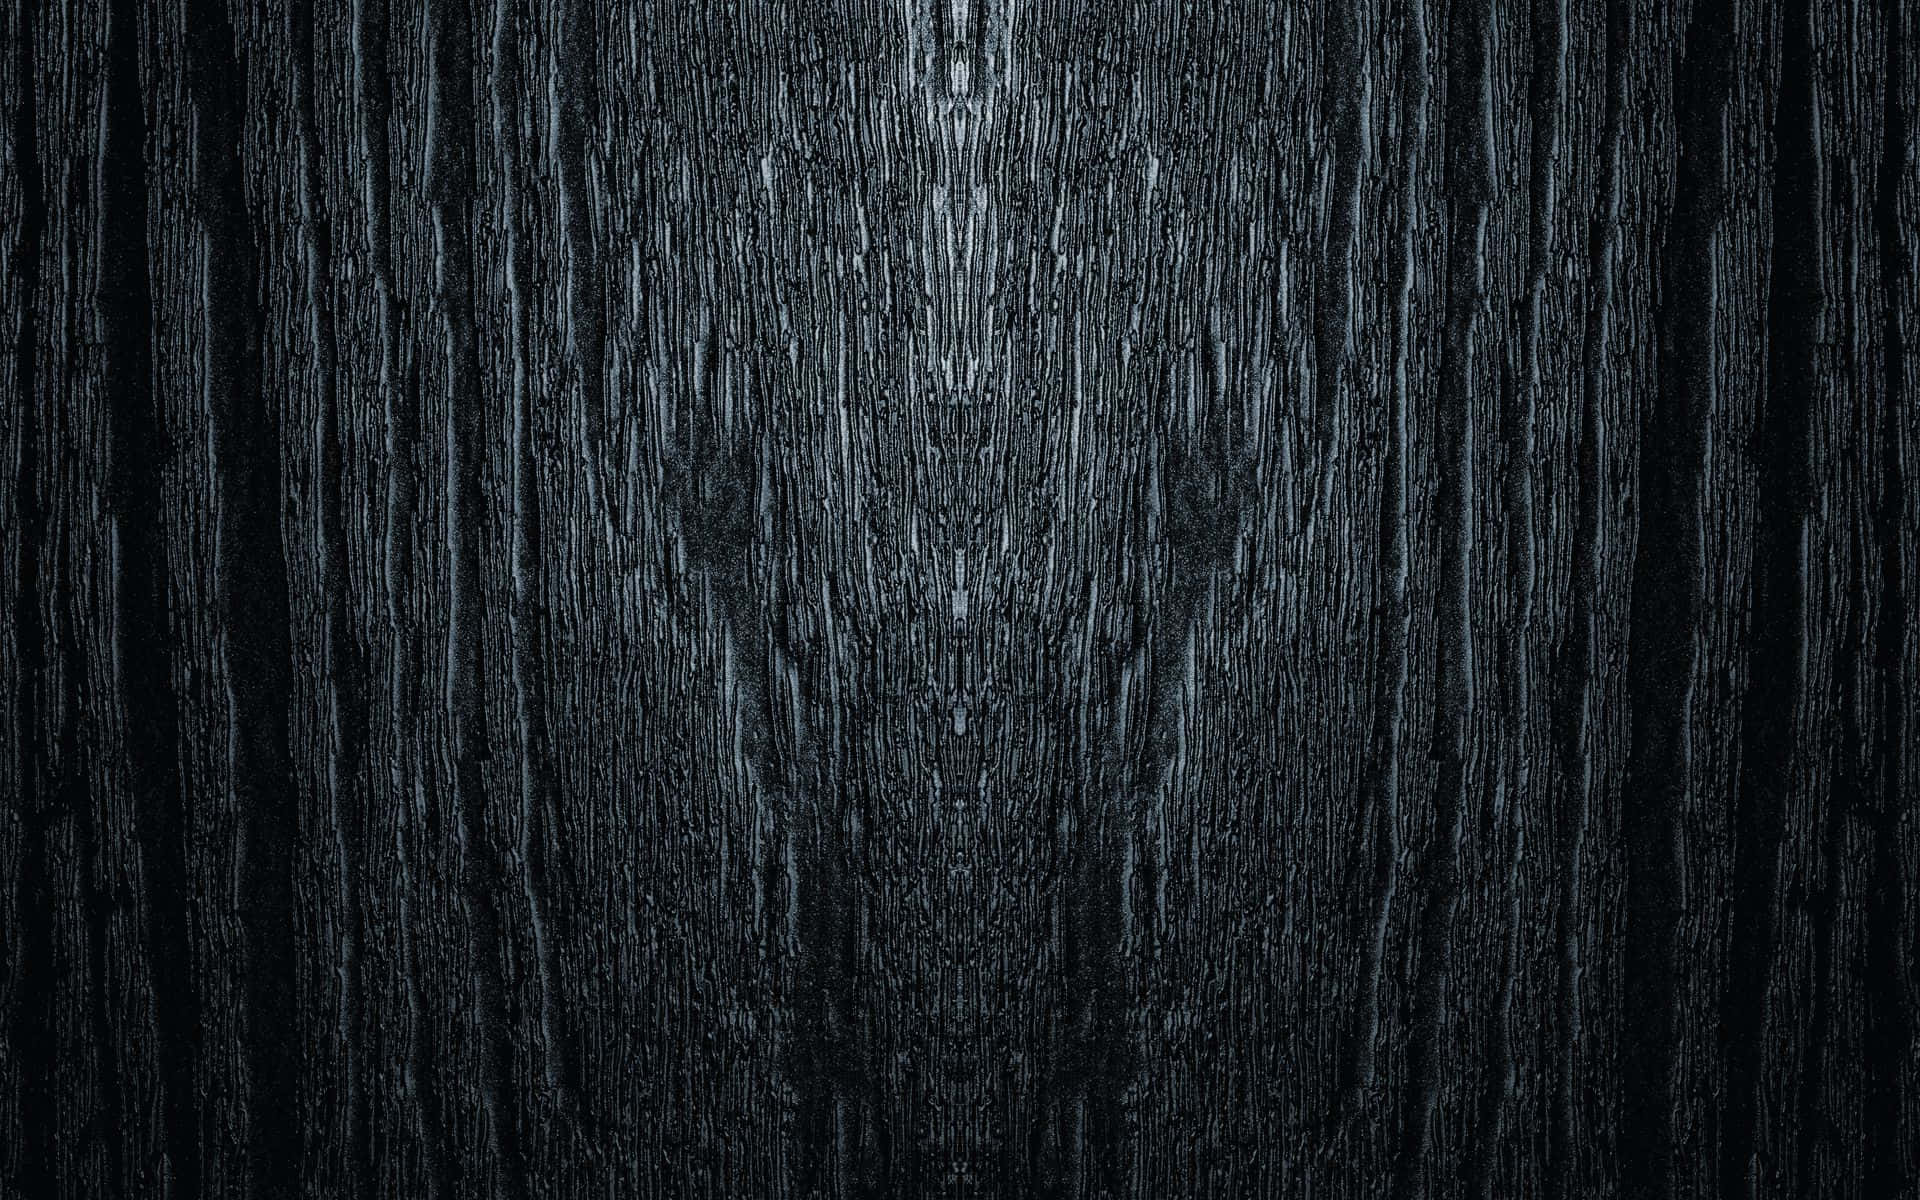 Rich Black Wood Grain Textured Background